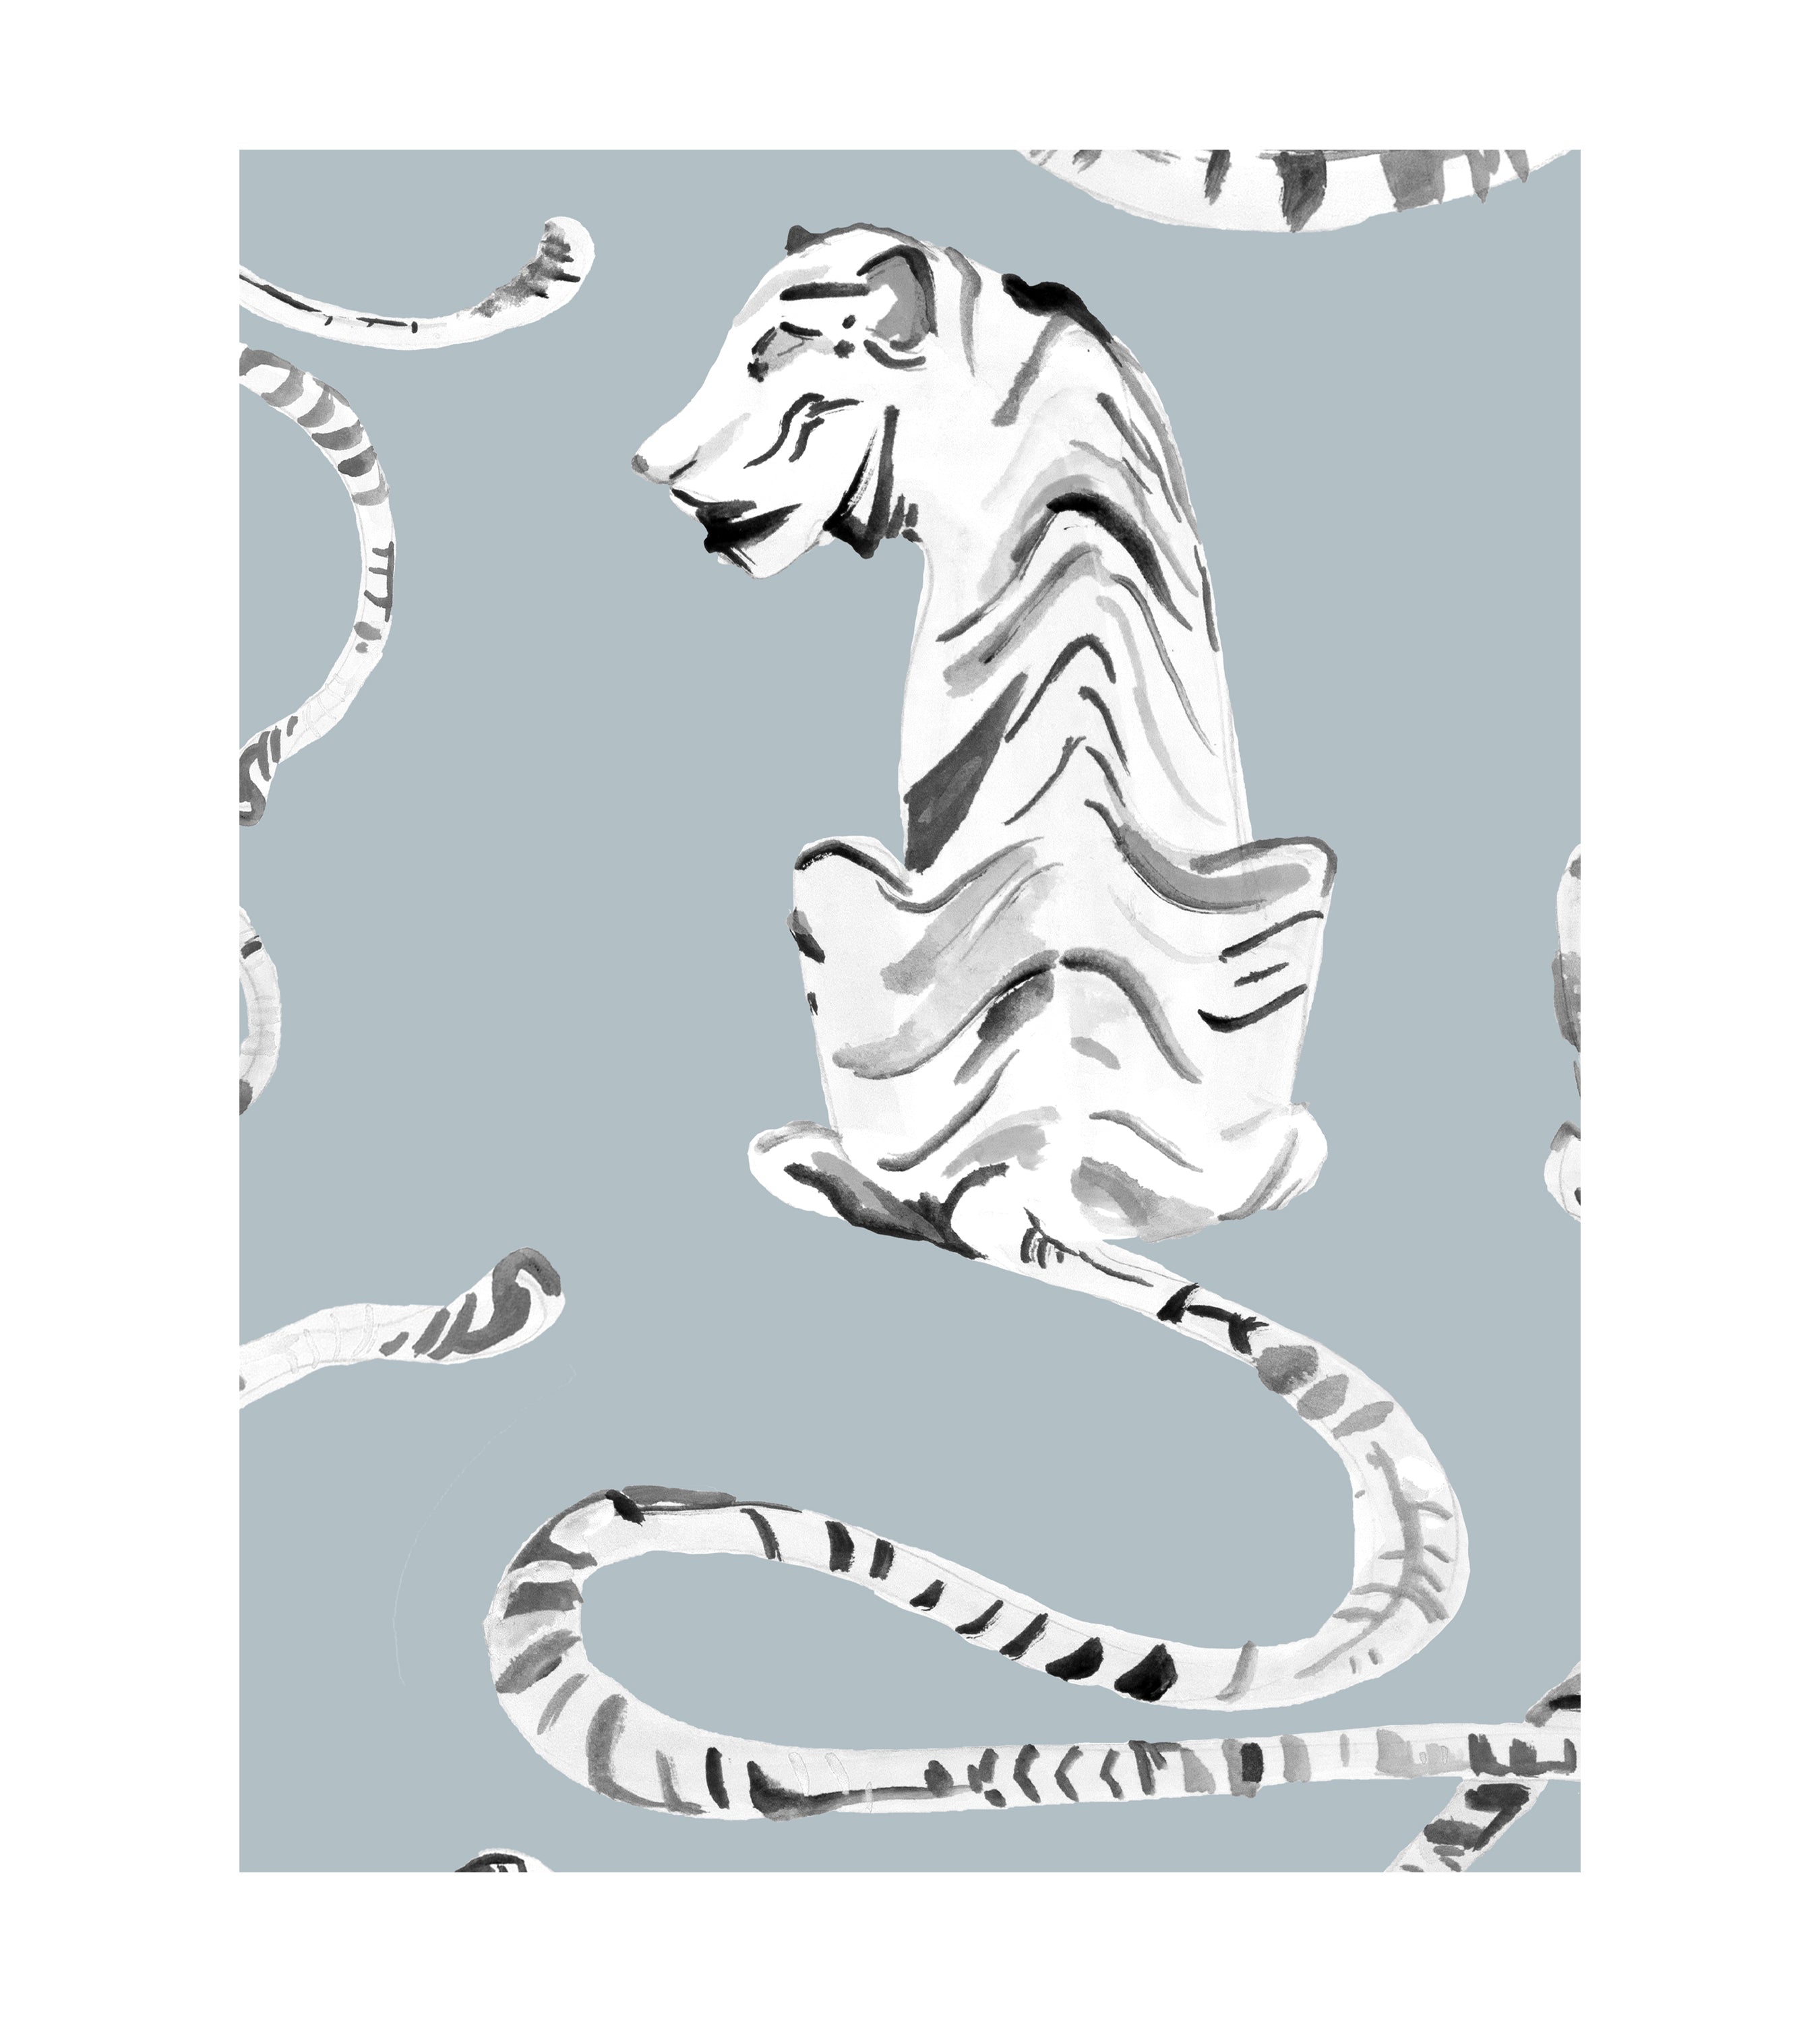 Tiger Stripe Classic Wallpaper